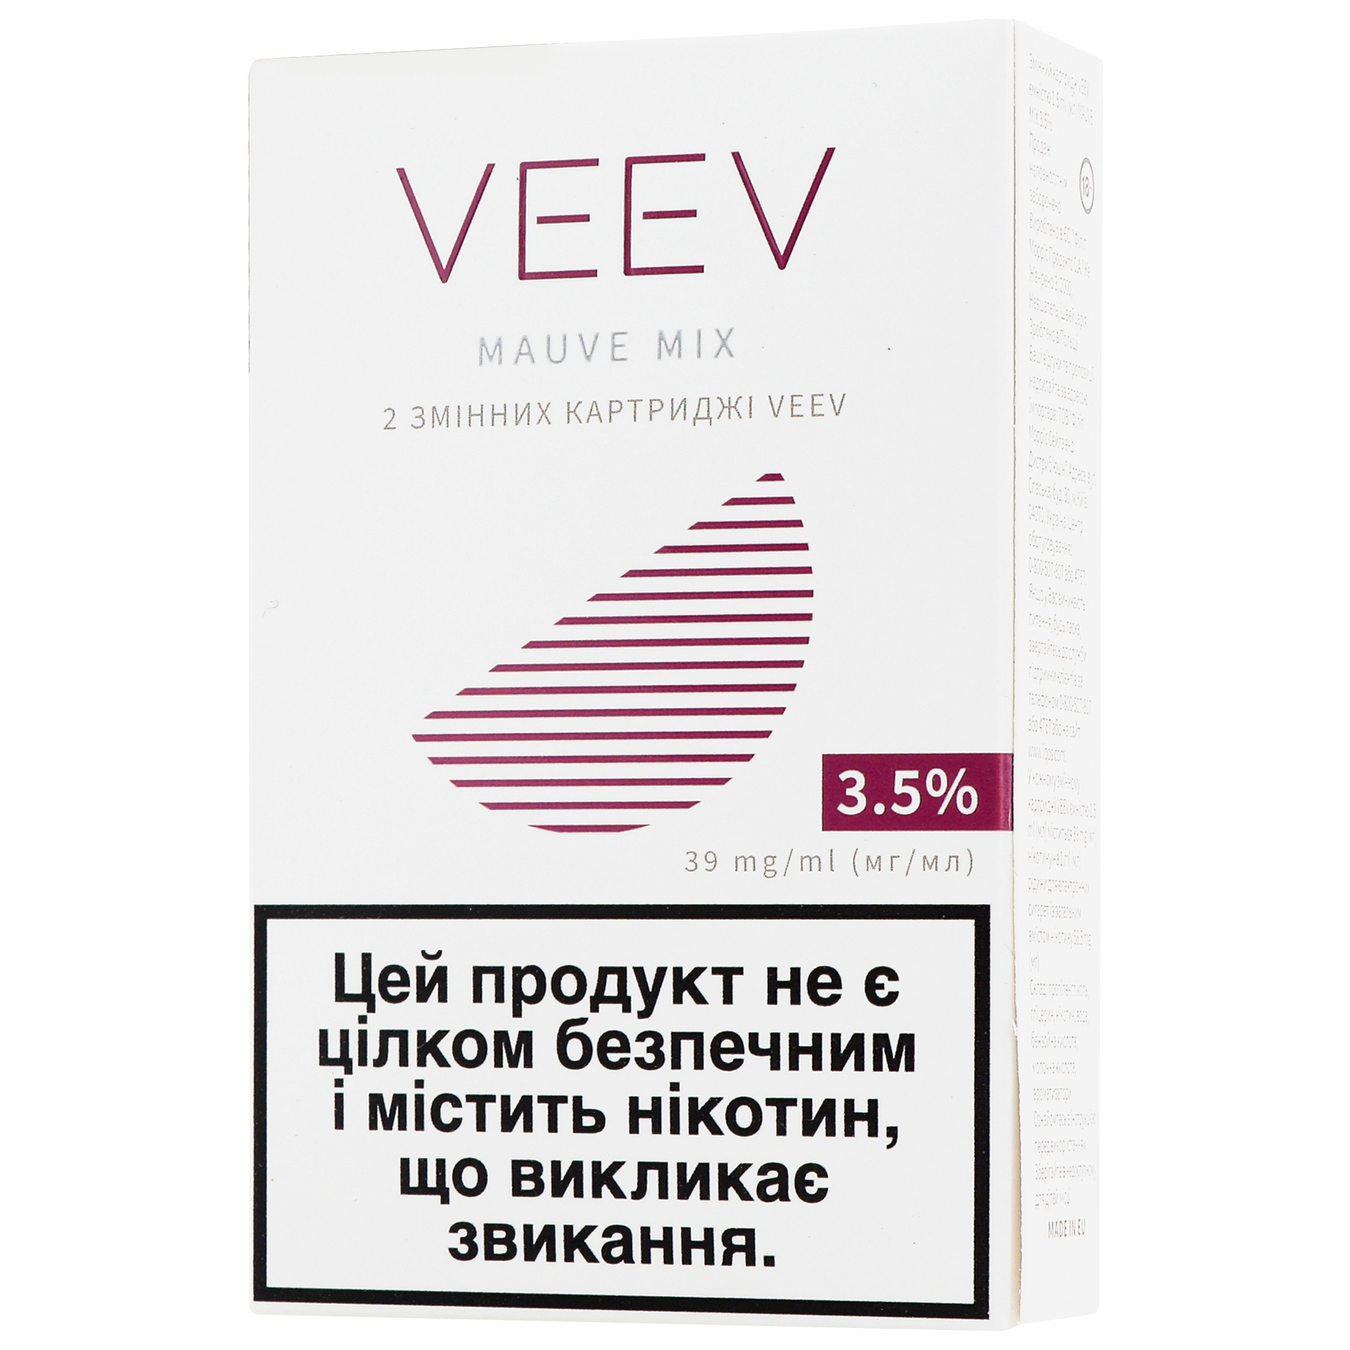 Картридж змінний Veev Mauve mix 3,5% (ціна вказана без акцизу) 4